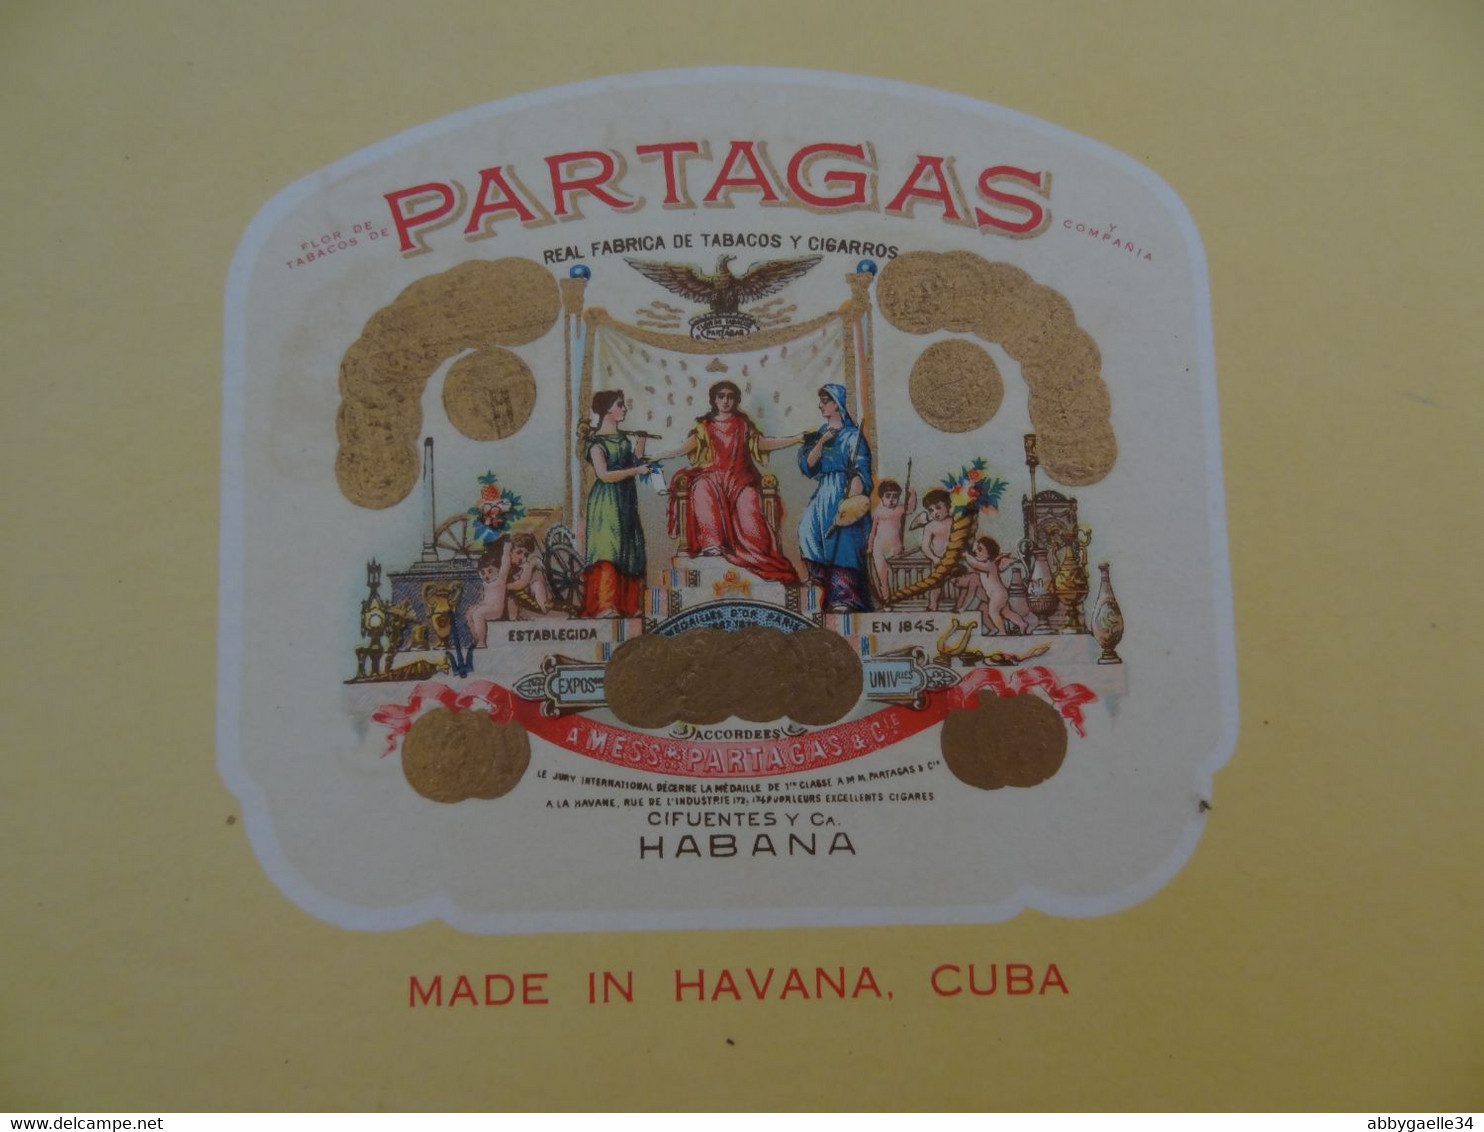 * Lot De 4 Boîtes De Tabac Vides Bois * Partagas Flor De Tabacos, Quintero Y Hno, Cienfuegos, Delfuma Havane Cuba (lot 1 - Empty Tobacco Boxes